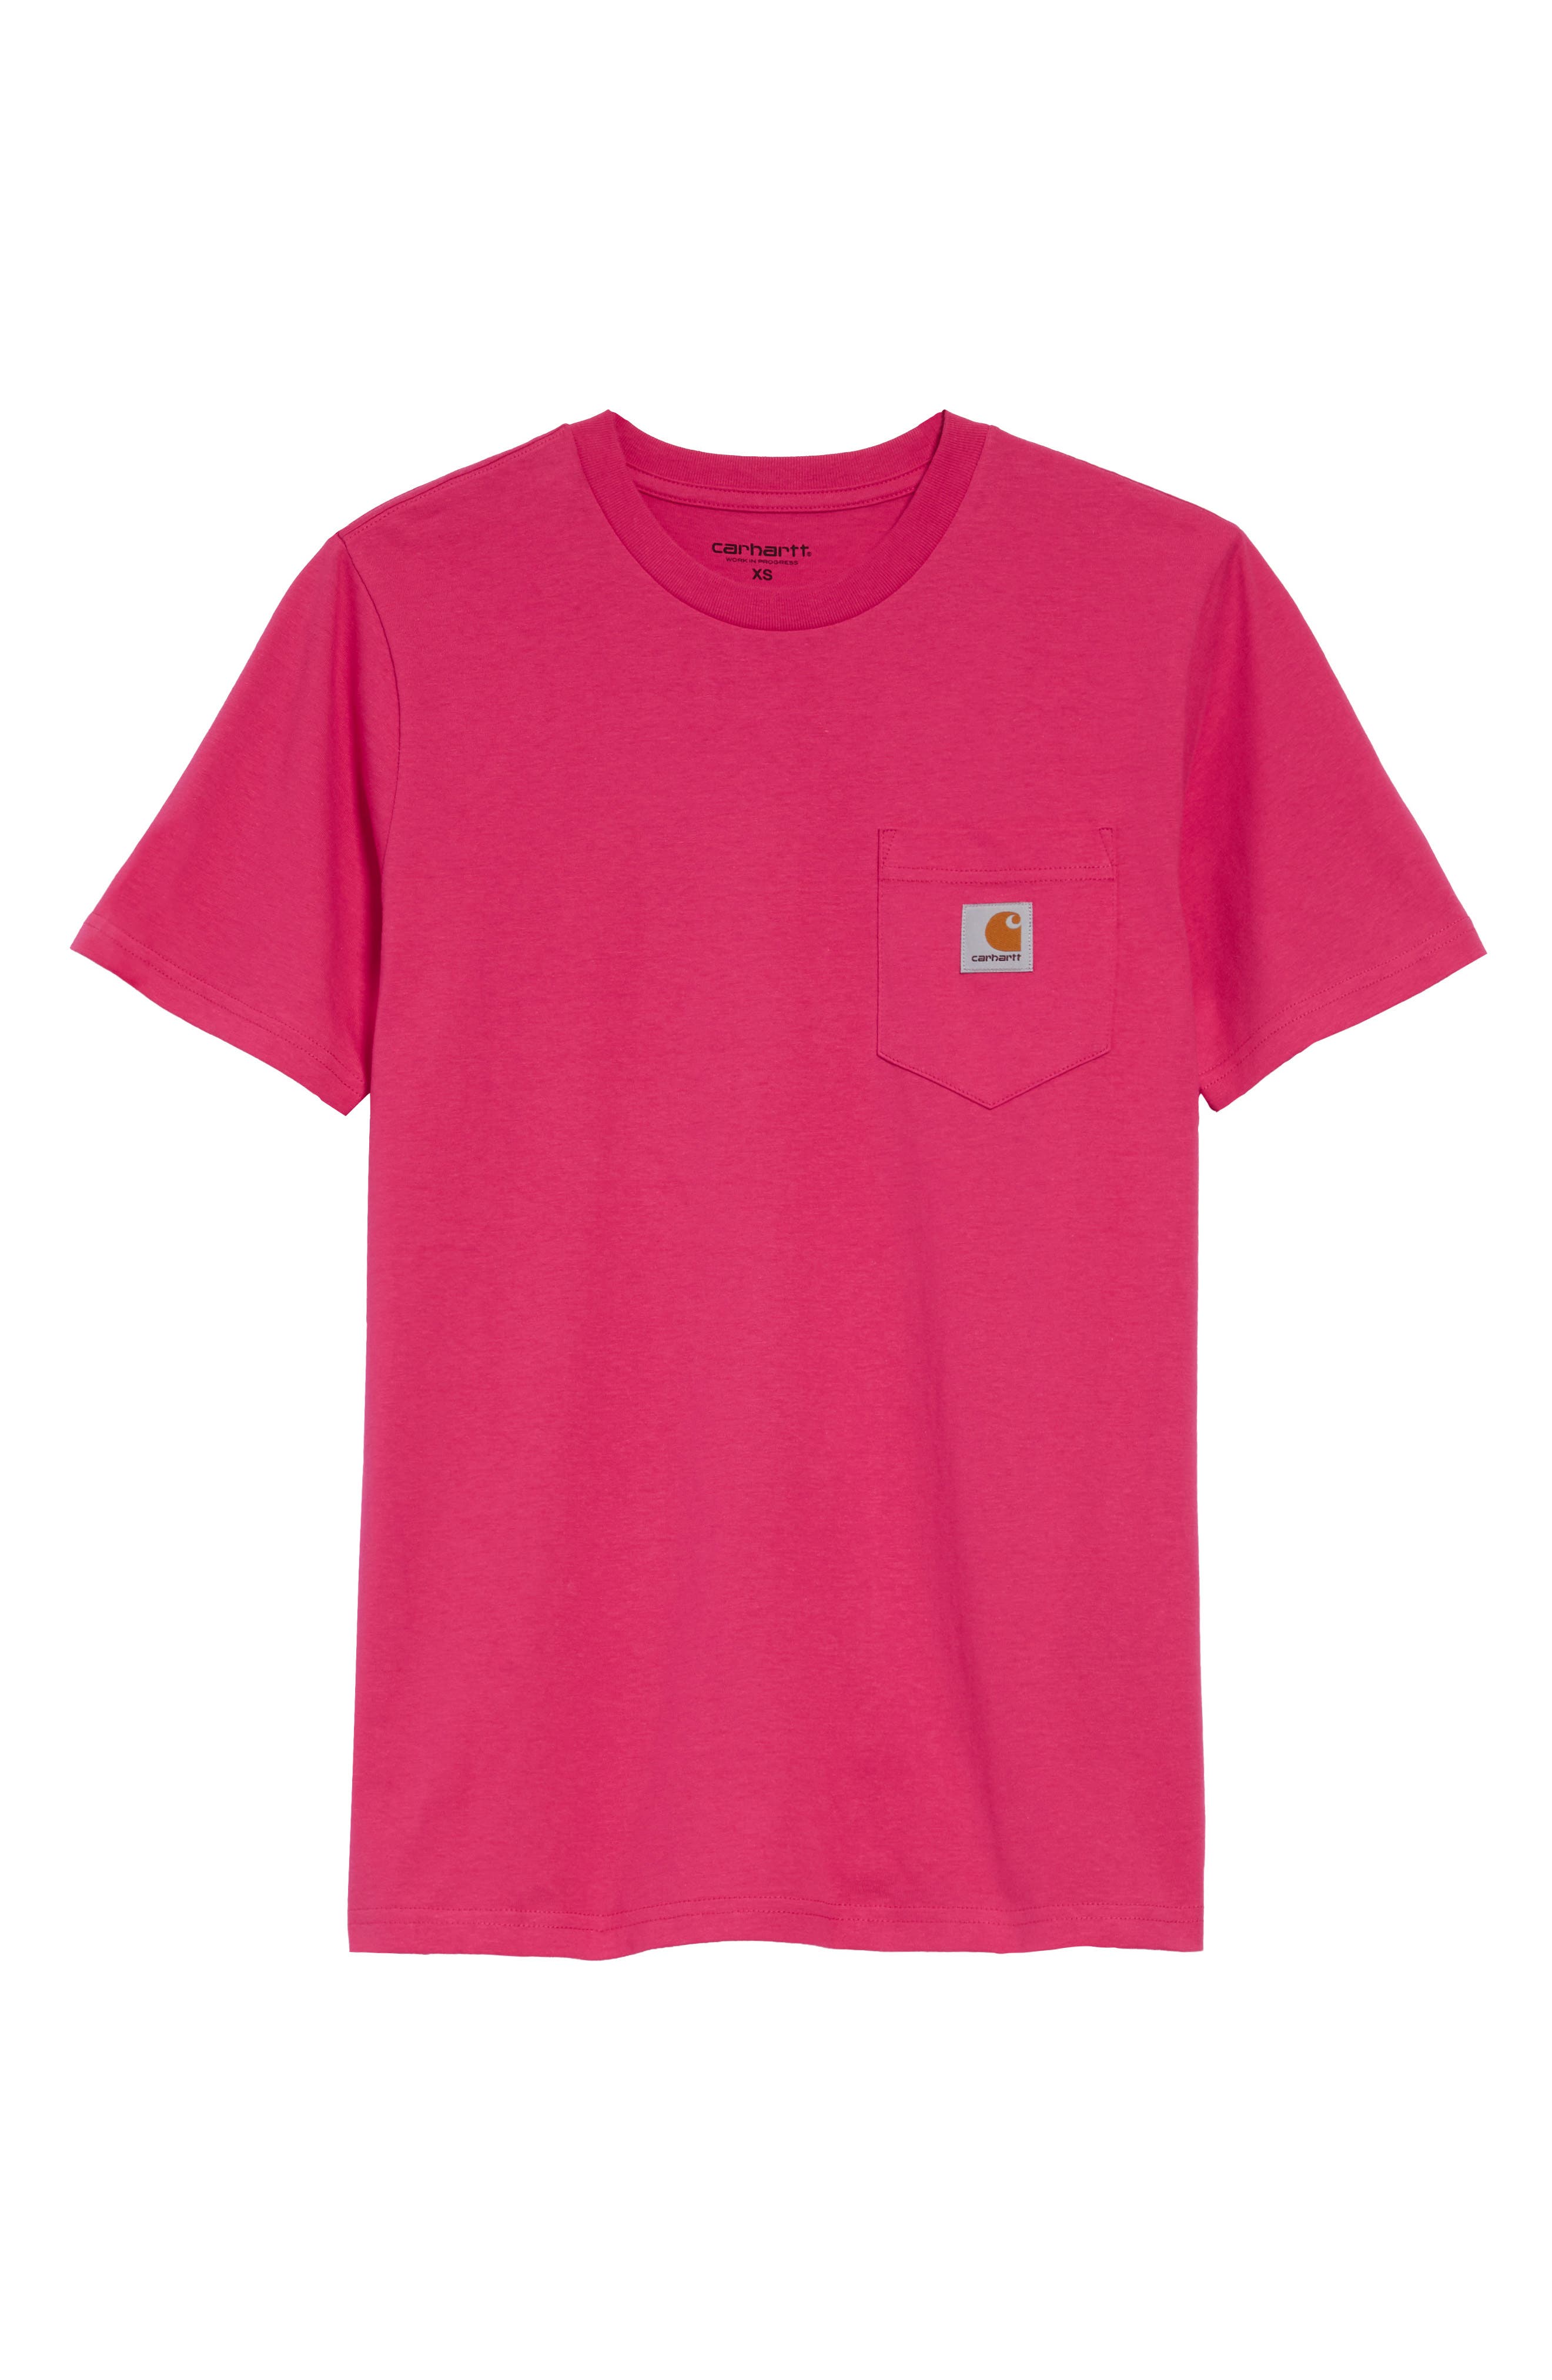 pink nike apparel